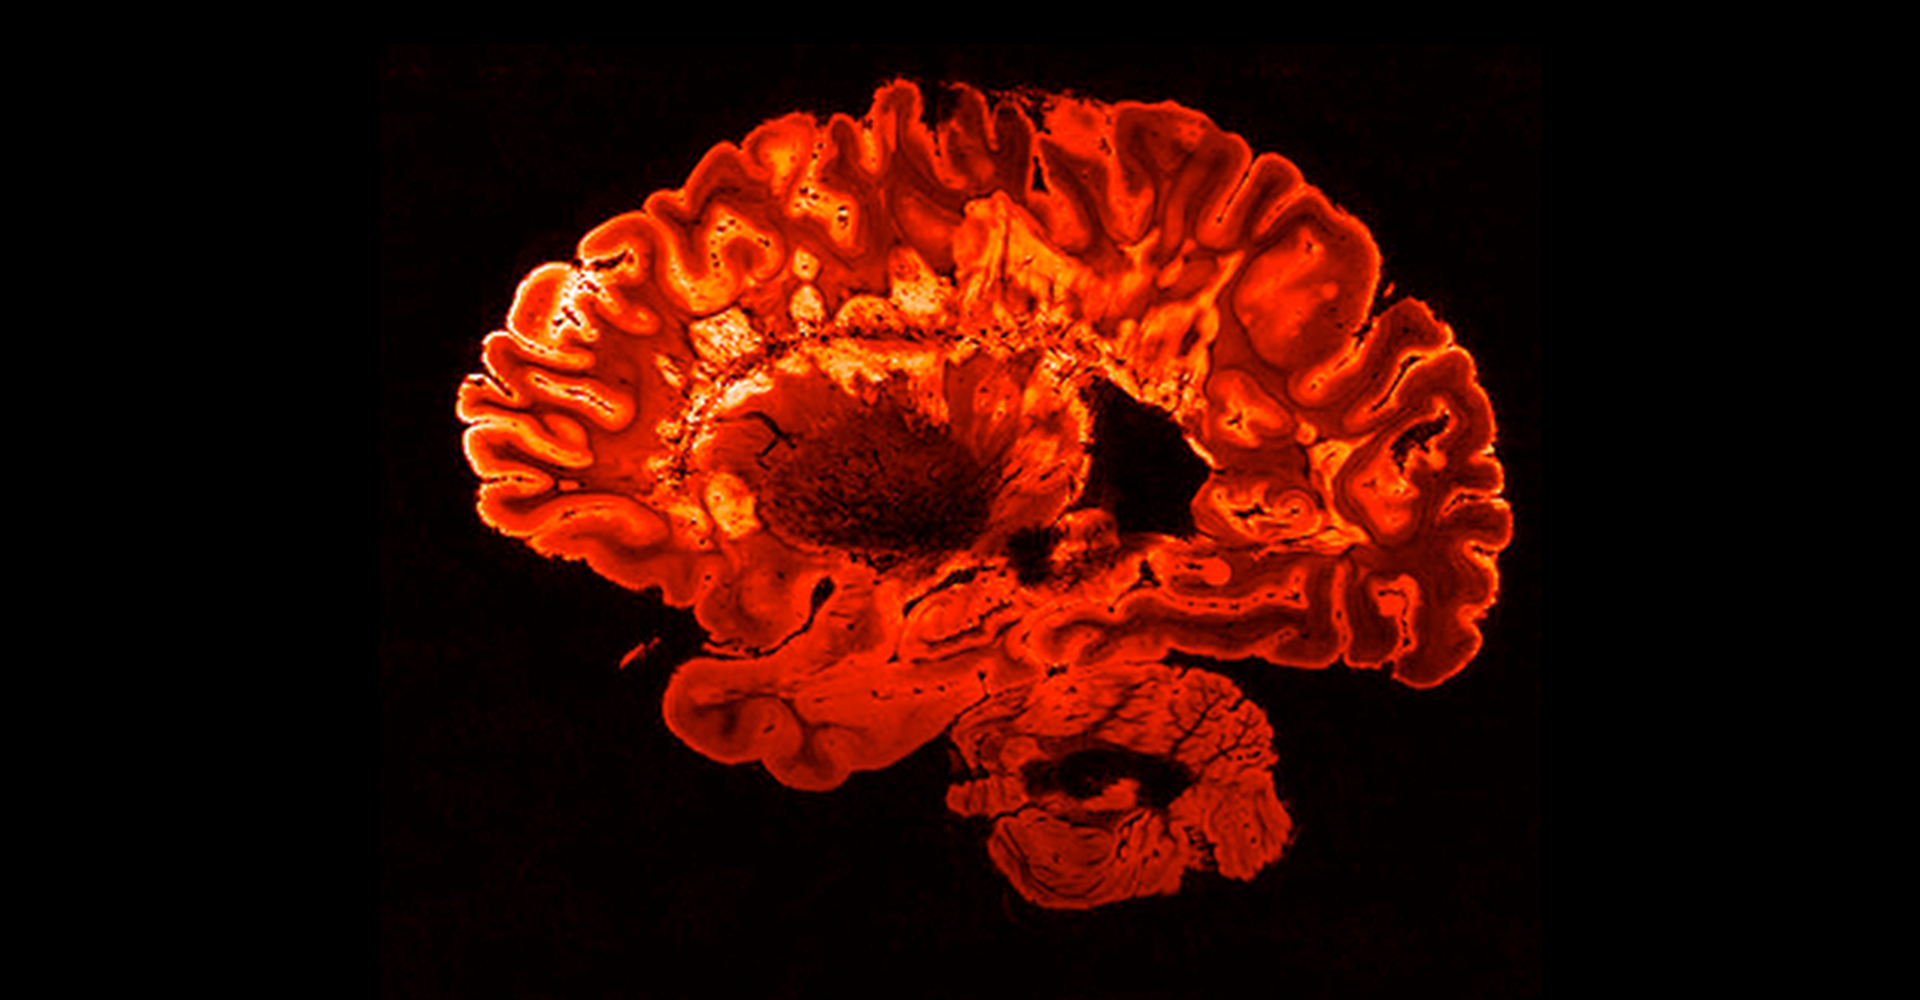 red mri brain scan